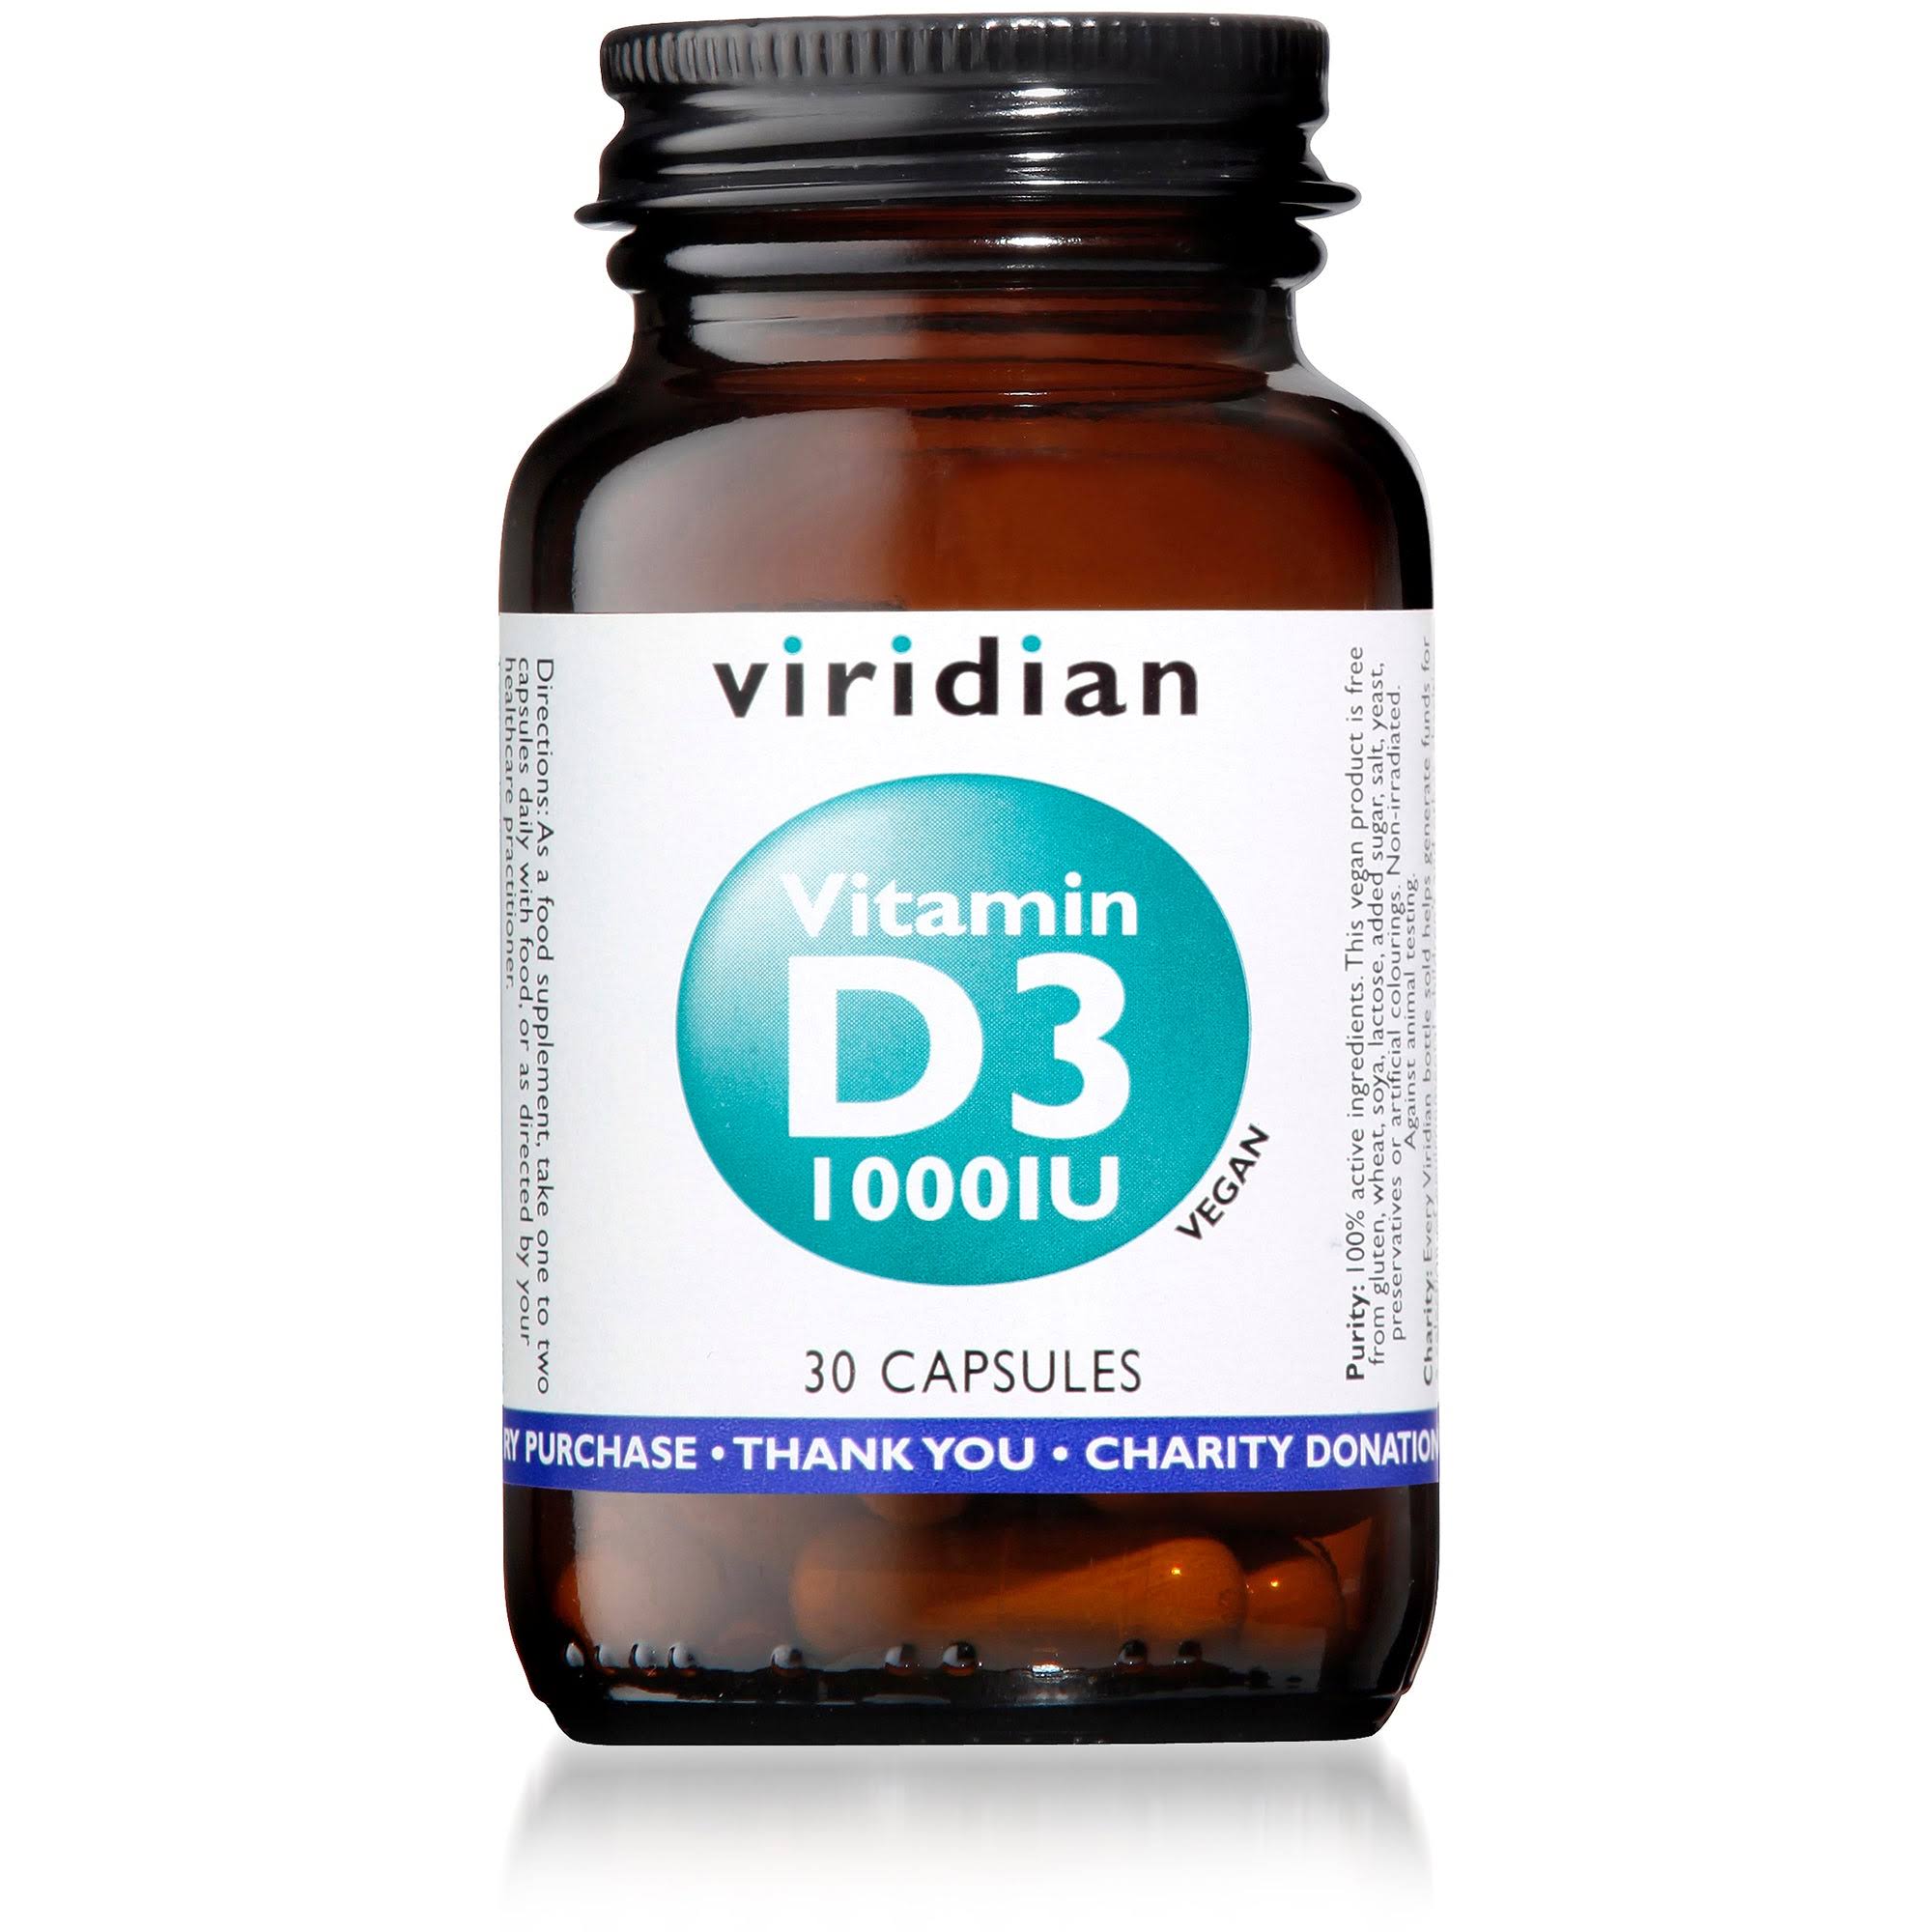 Viridian Vitamin D Capsules - x30